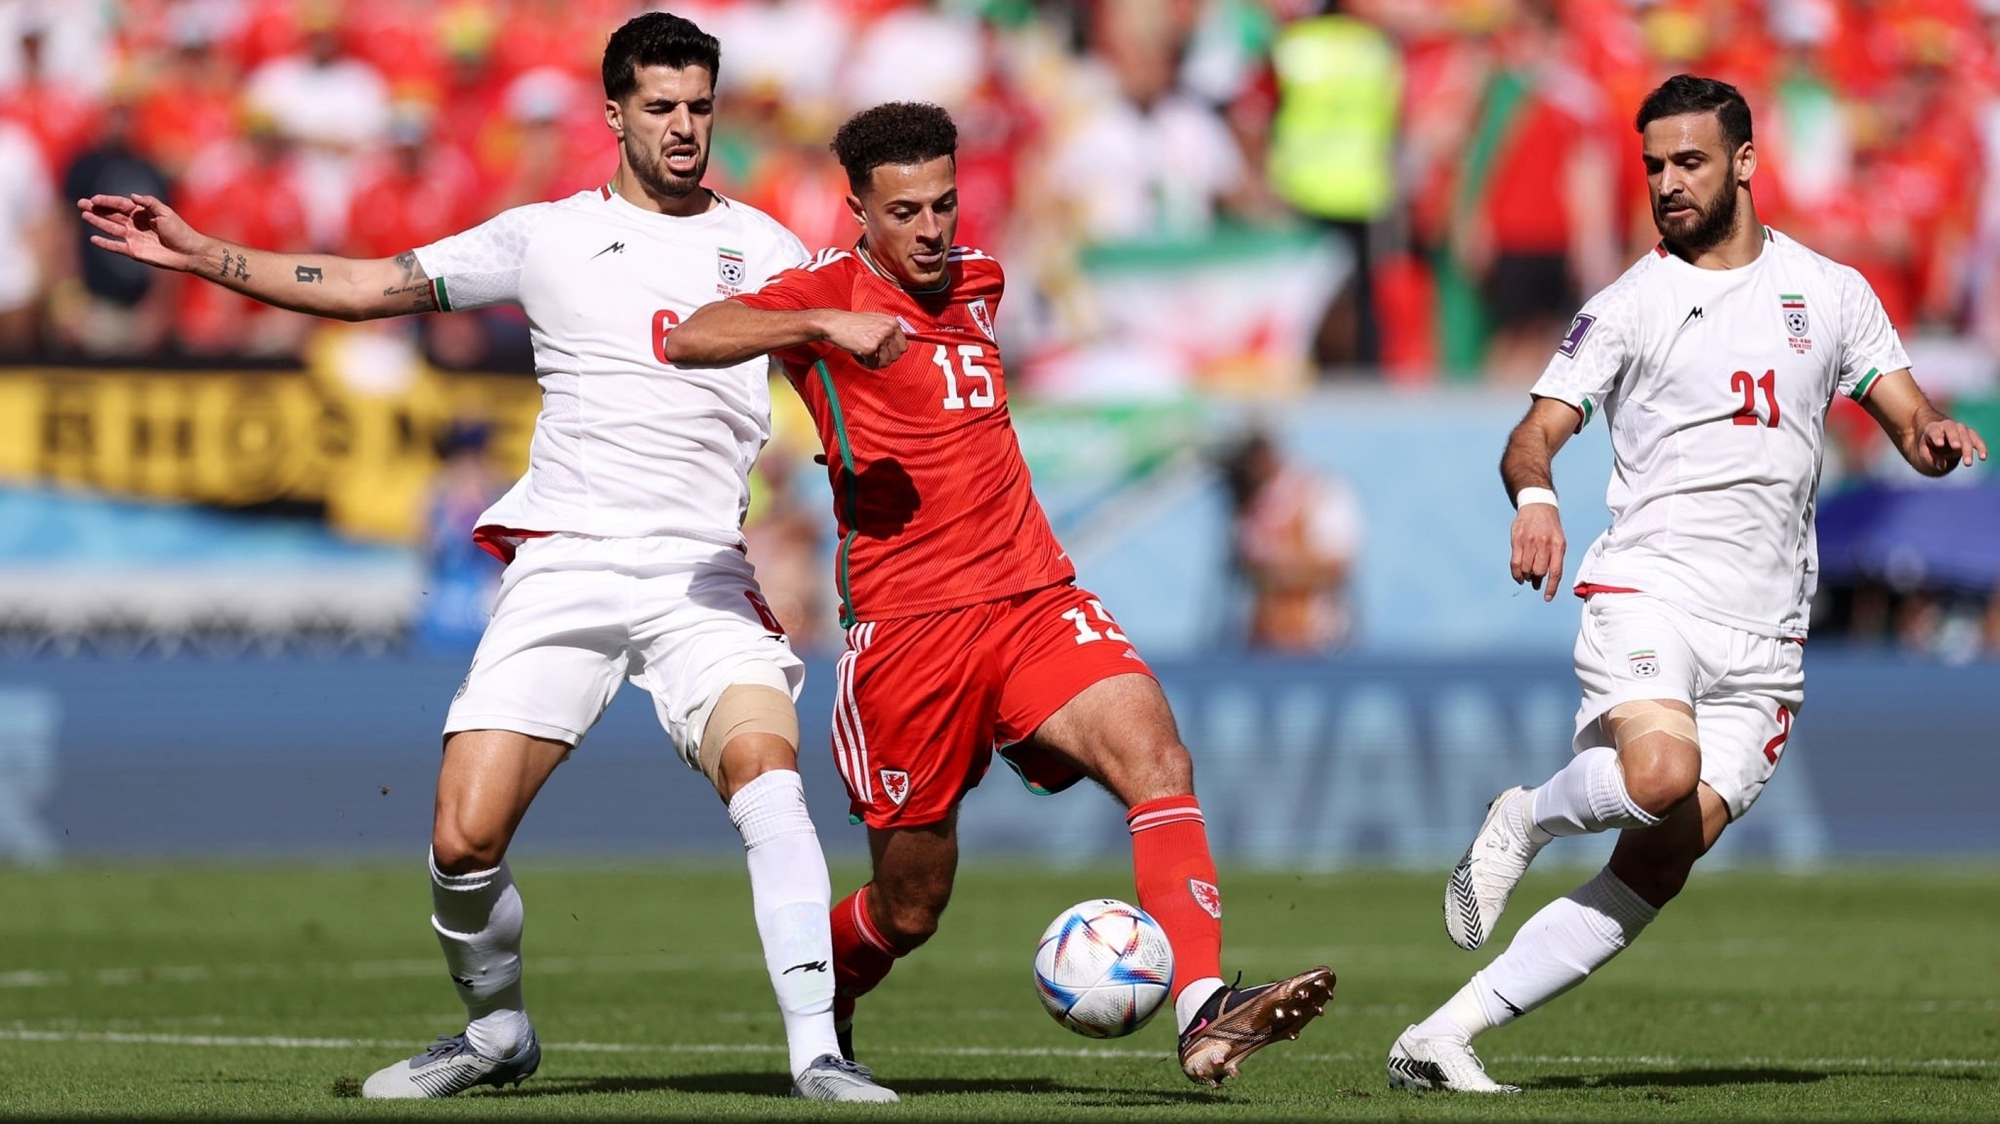 Kết quả bóng đá xứ Wales 0-2 Iran: Thủ môn nhận thẻ đỏ, xứ Wales gục ngã phút bù giờ